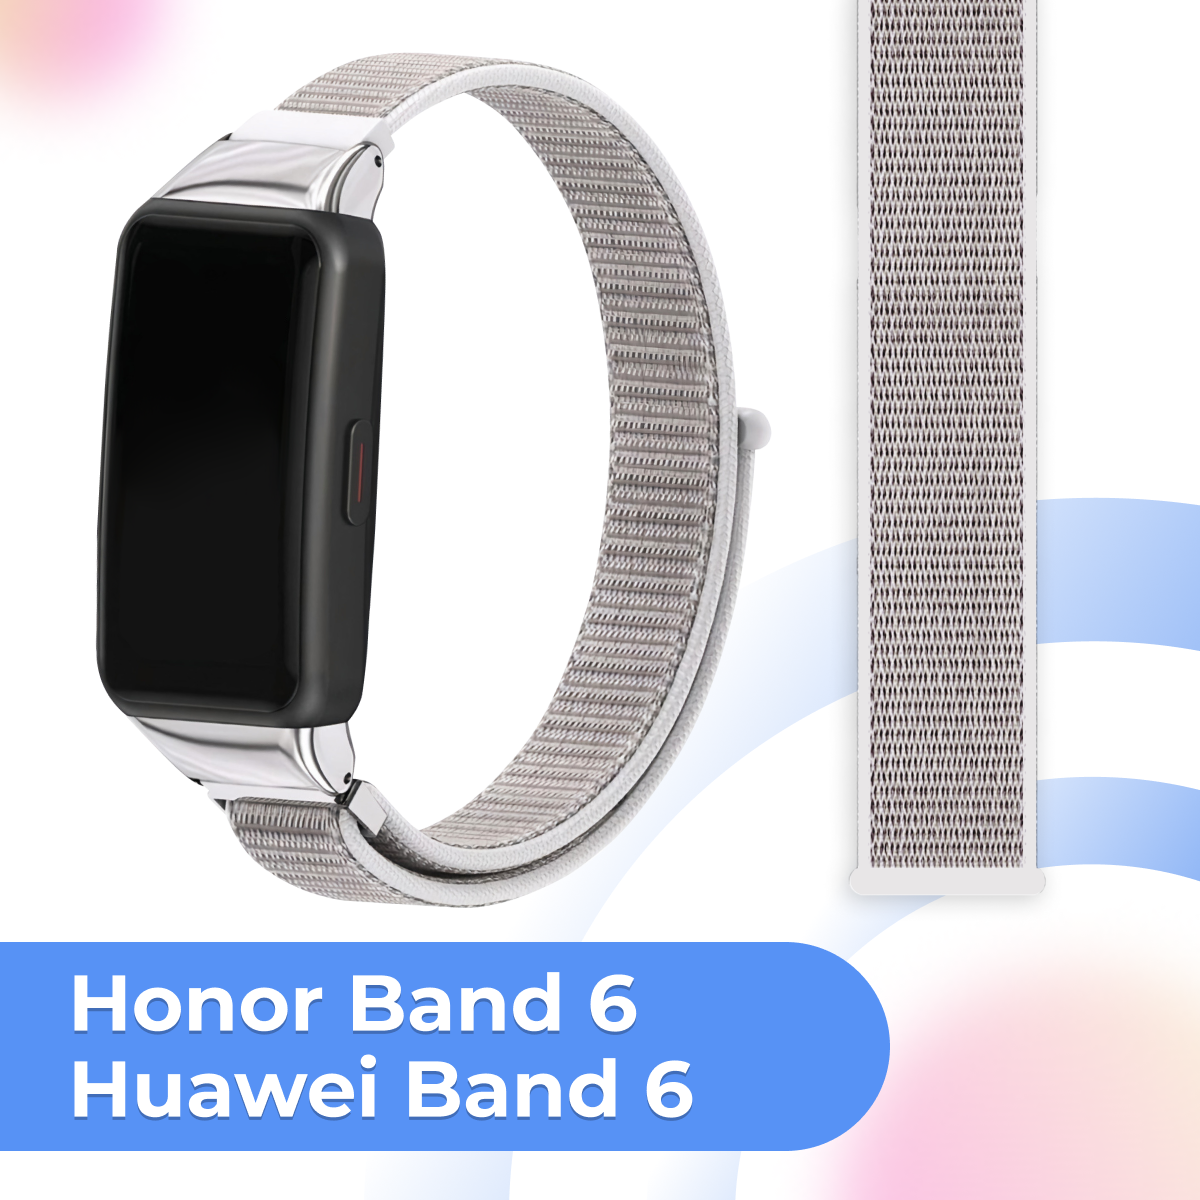 Нейлоновый ремешок для фитнес трекера Honor Band 6 и Huawei Band 6 / Тканевый сменный браслет на смарт часы Хонор Бэнд 6 и Хуавей Бэнд 6 / Бело-серый